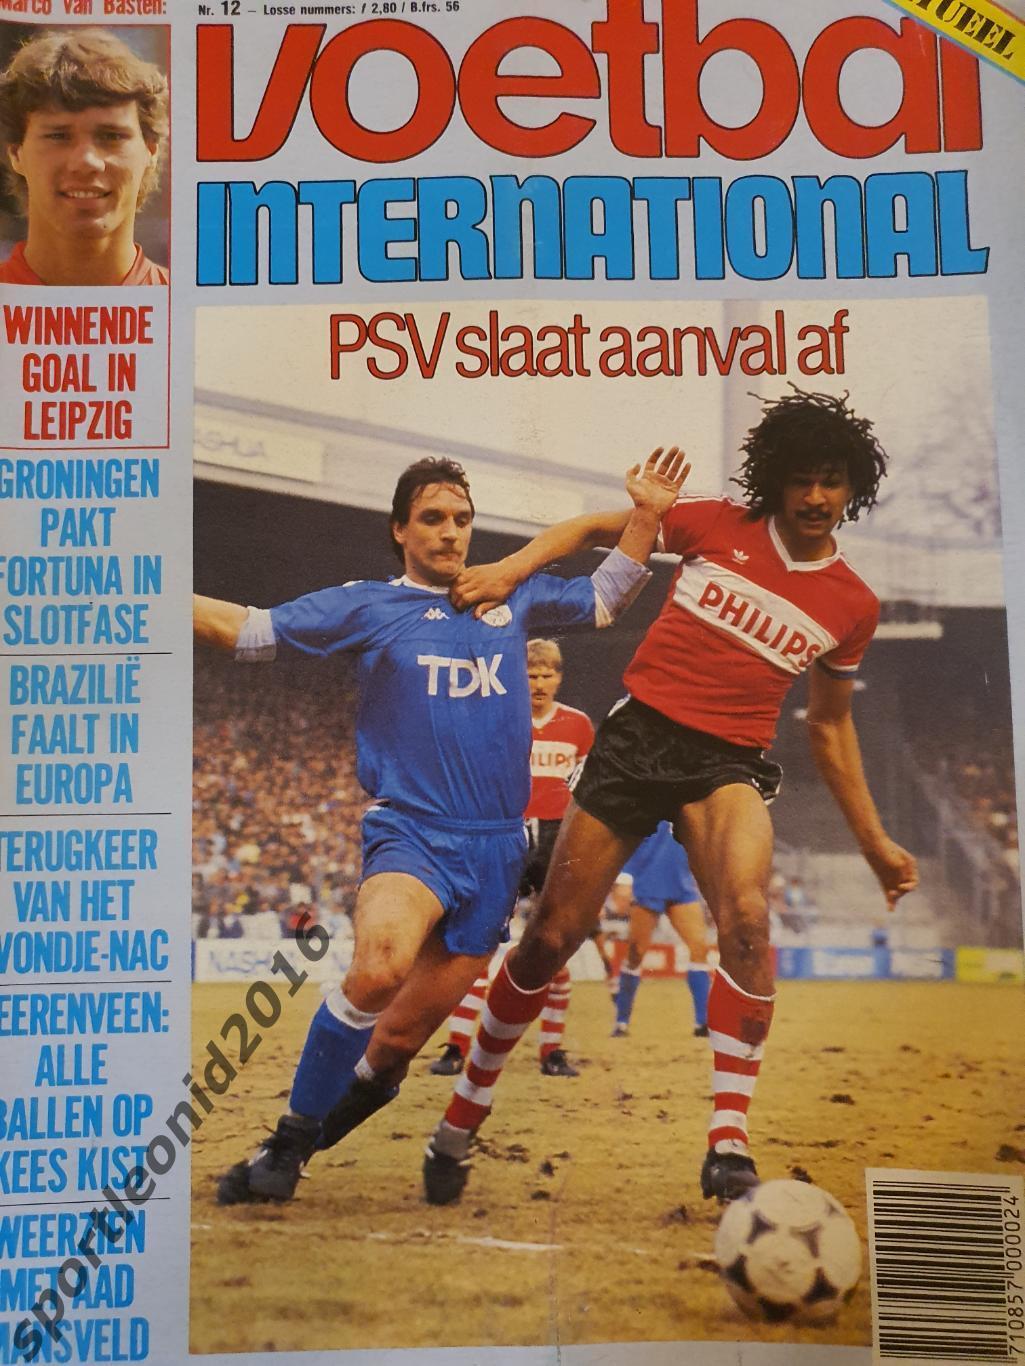 Voetbal International 1986.14 топ выпусков.В том числе итоговые к ЧМ-86.2 6